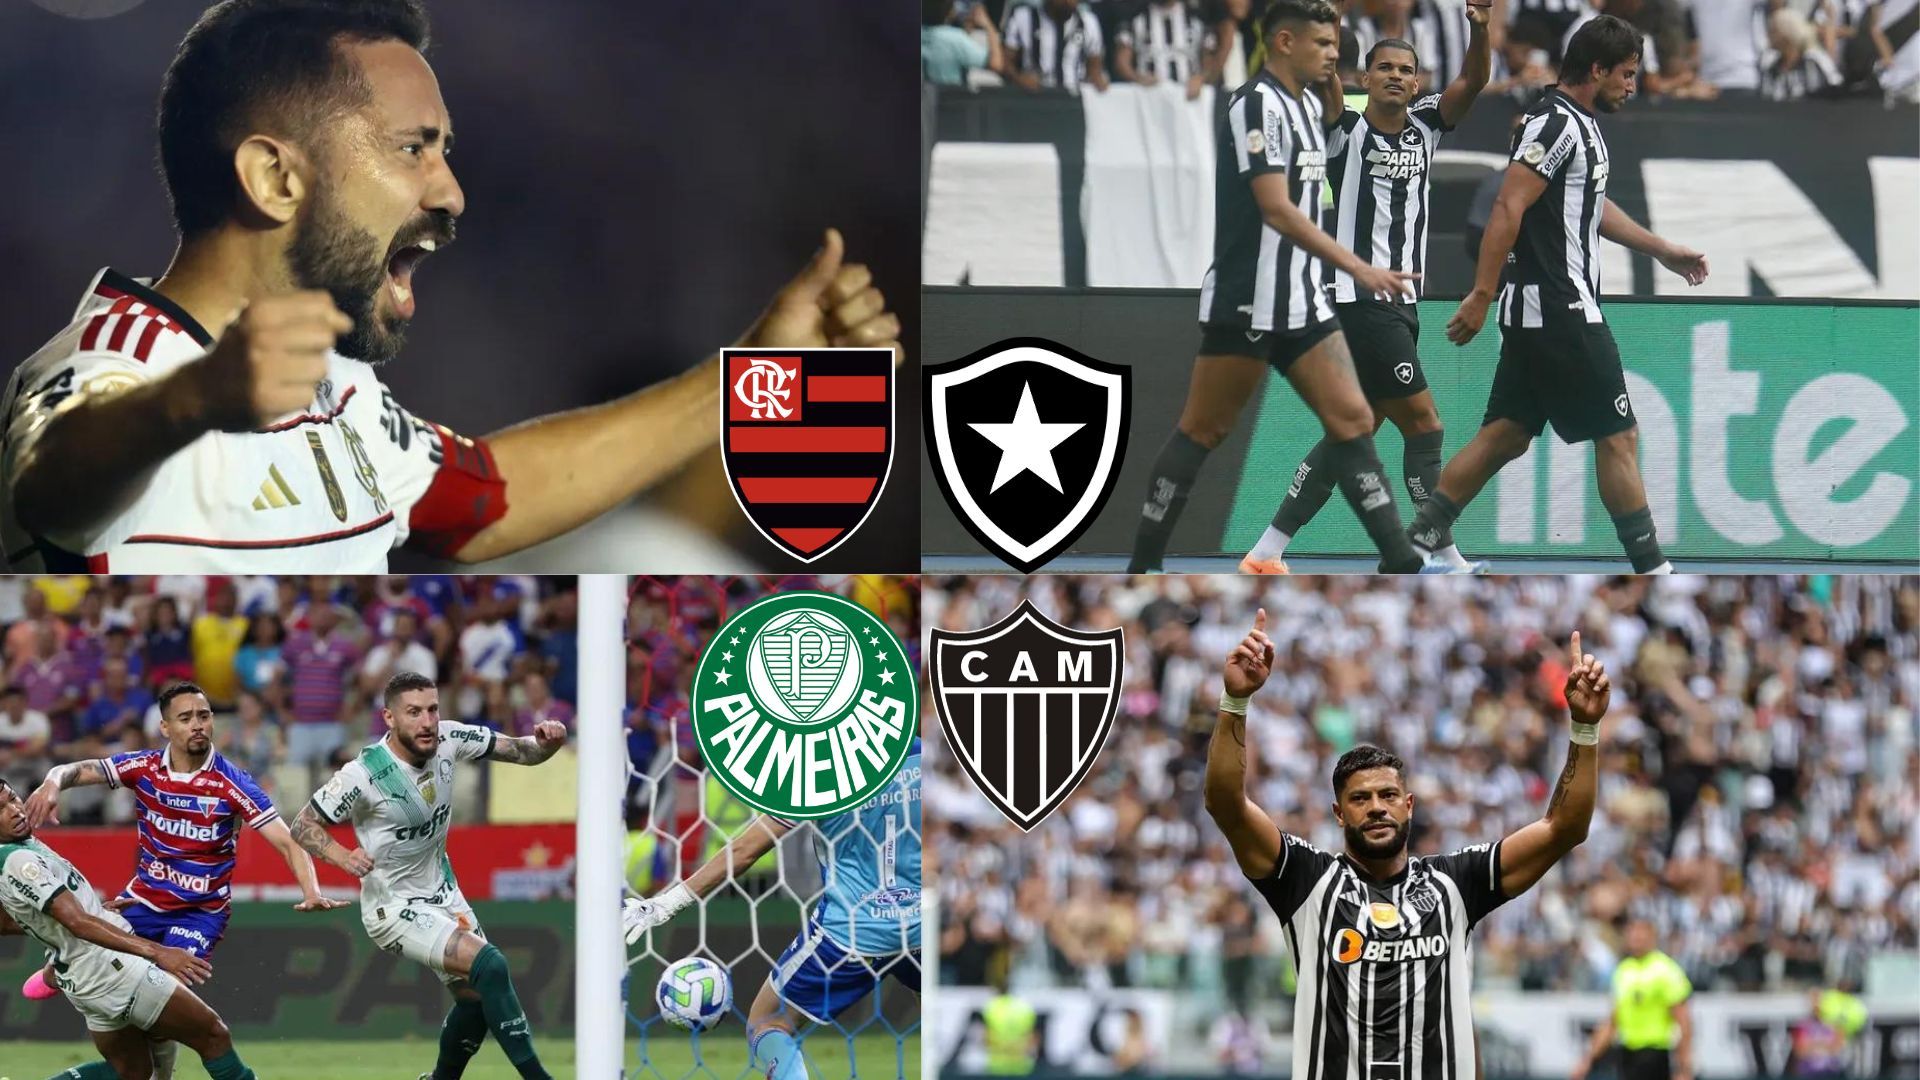 Grupos do Campeonato Paulista 2022 estão definidos - CBN Campinas 99,1 FM